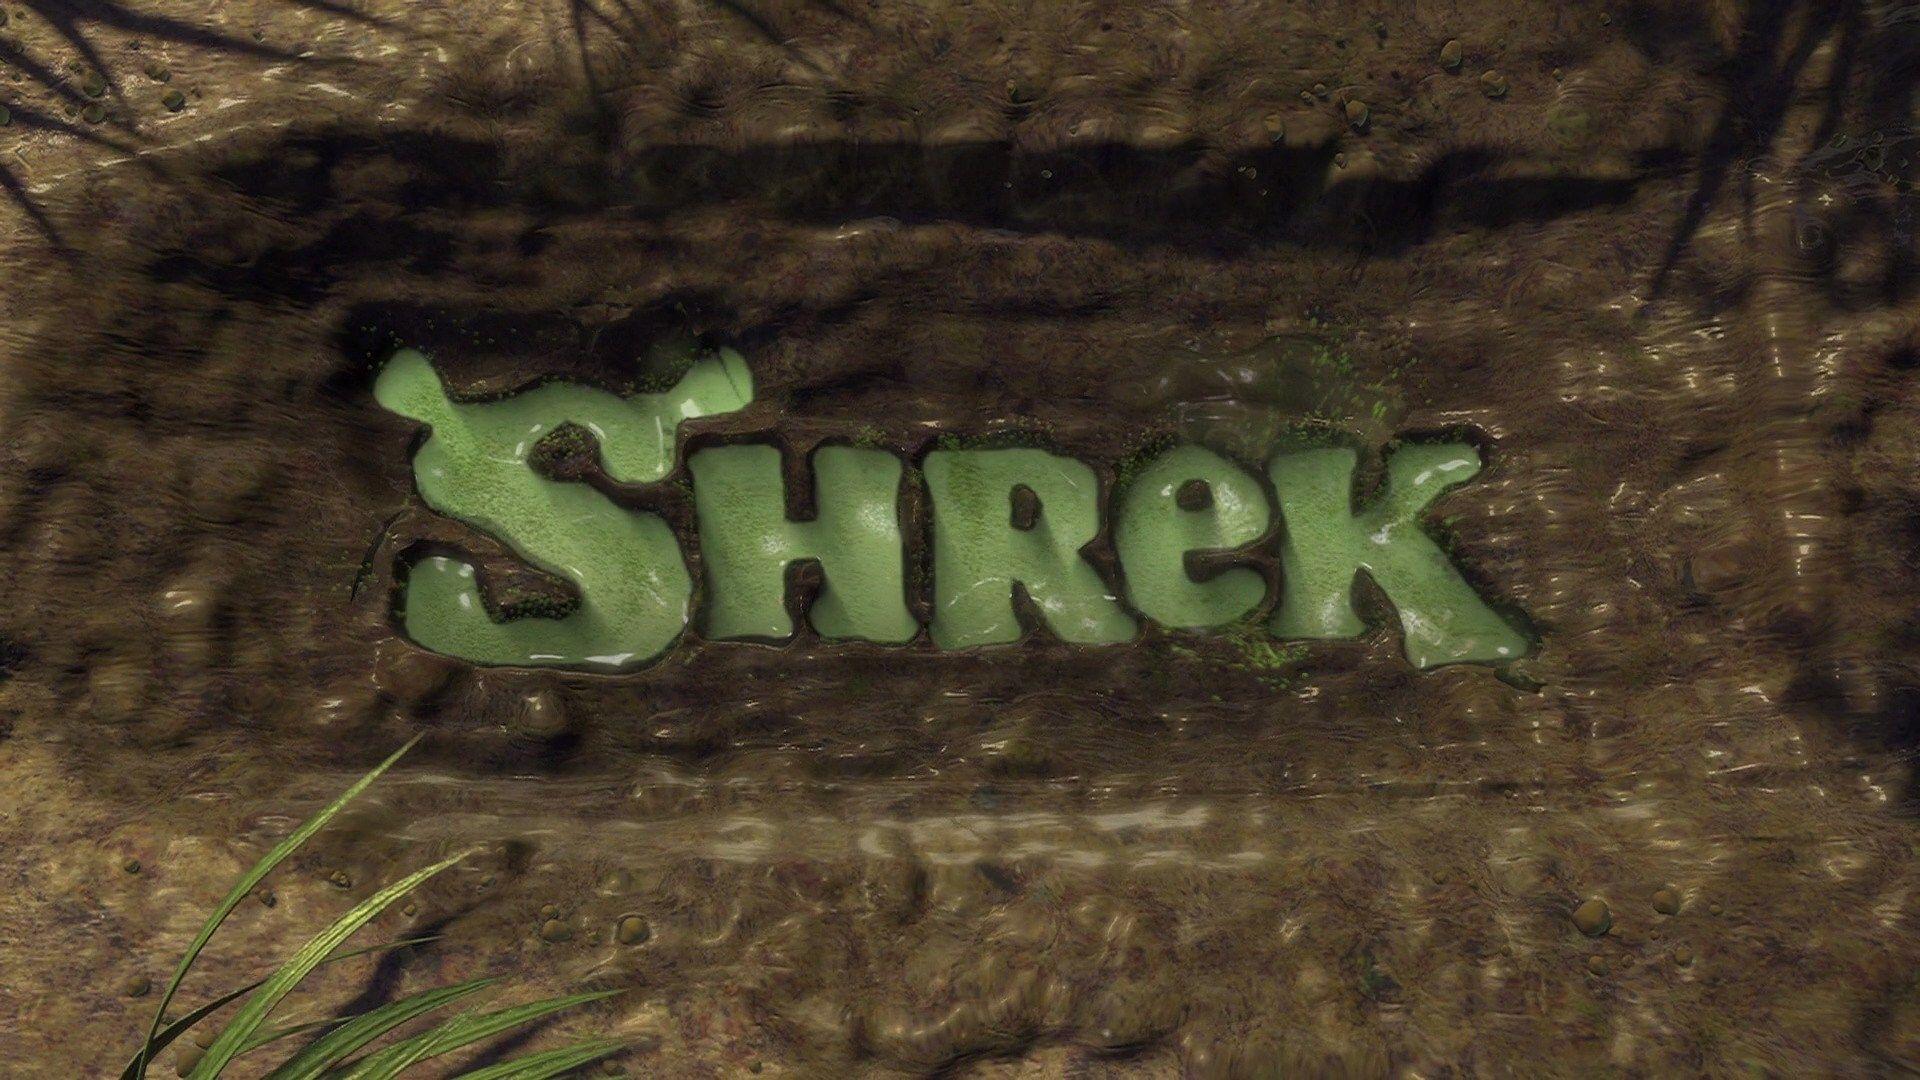 Shrek Logo - Shrek. Film and Television